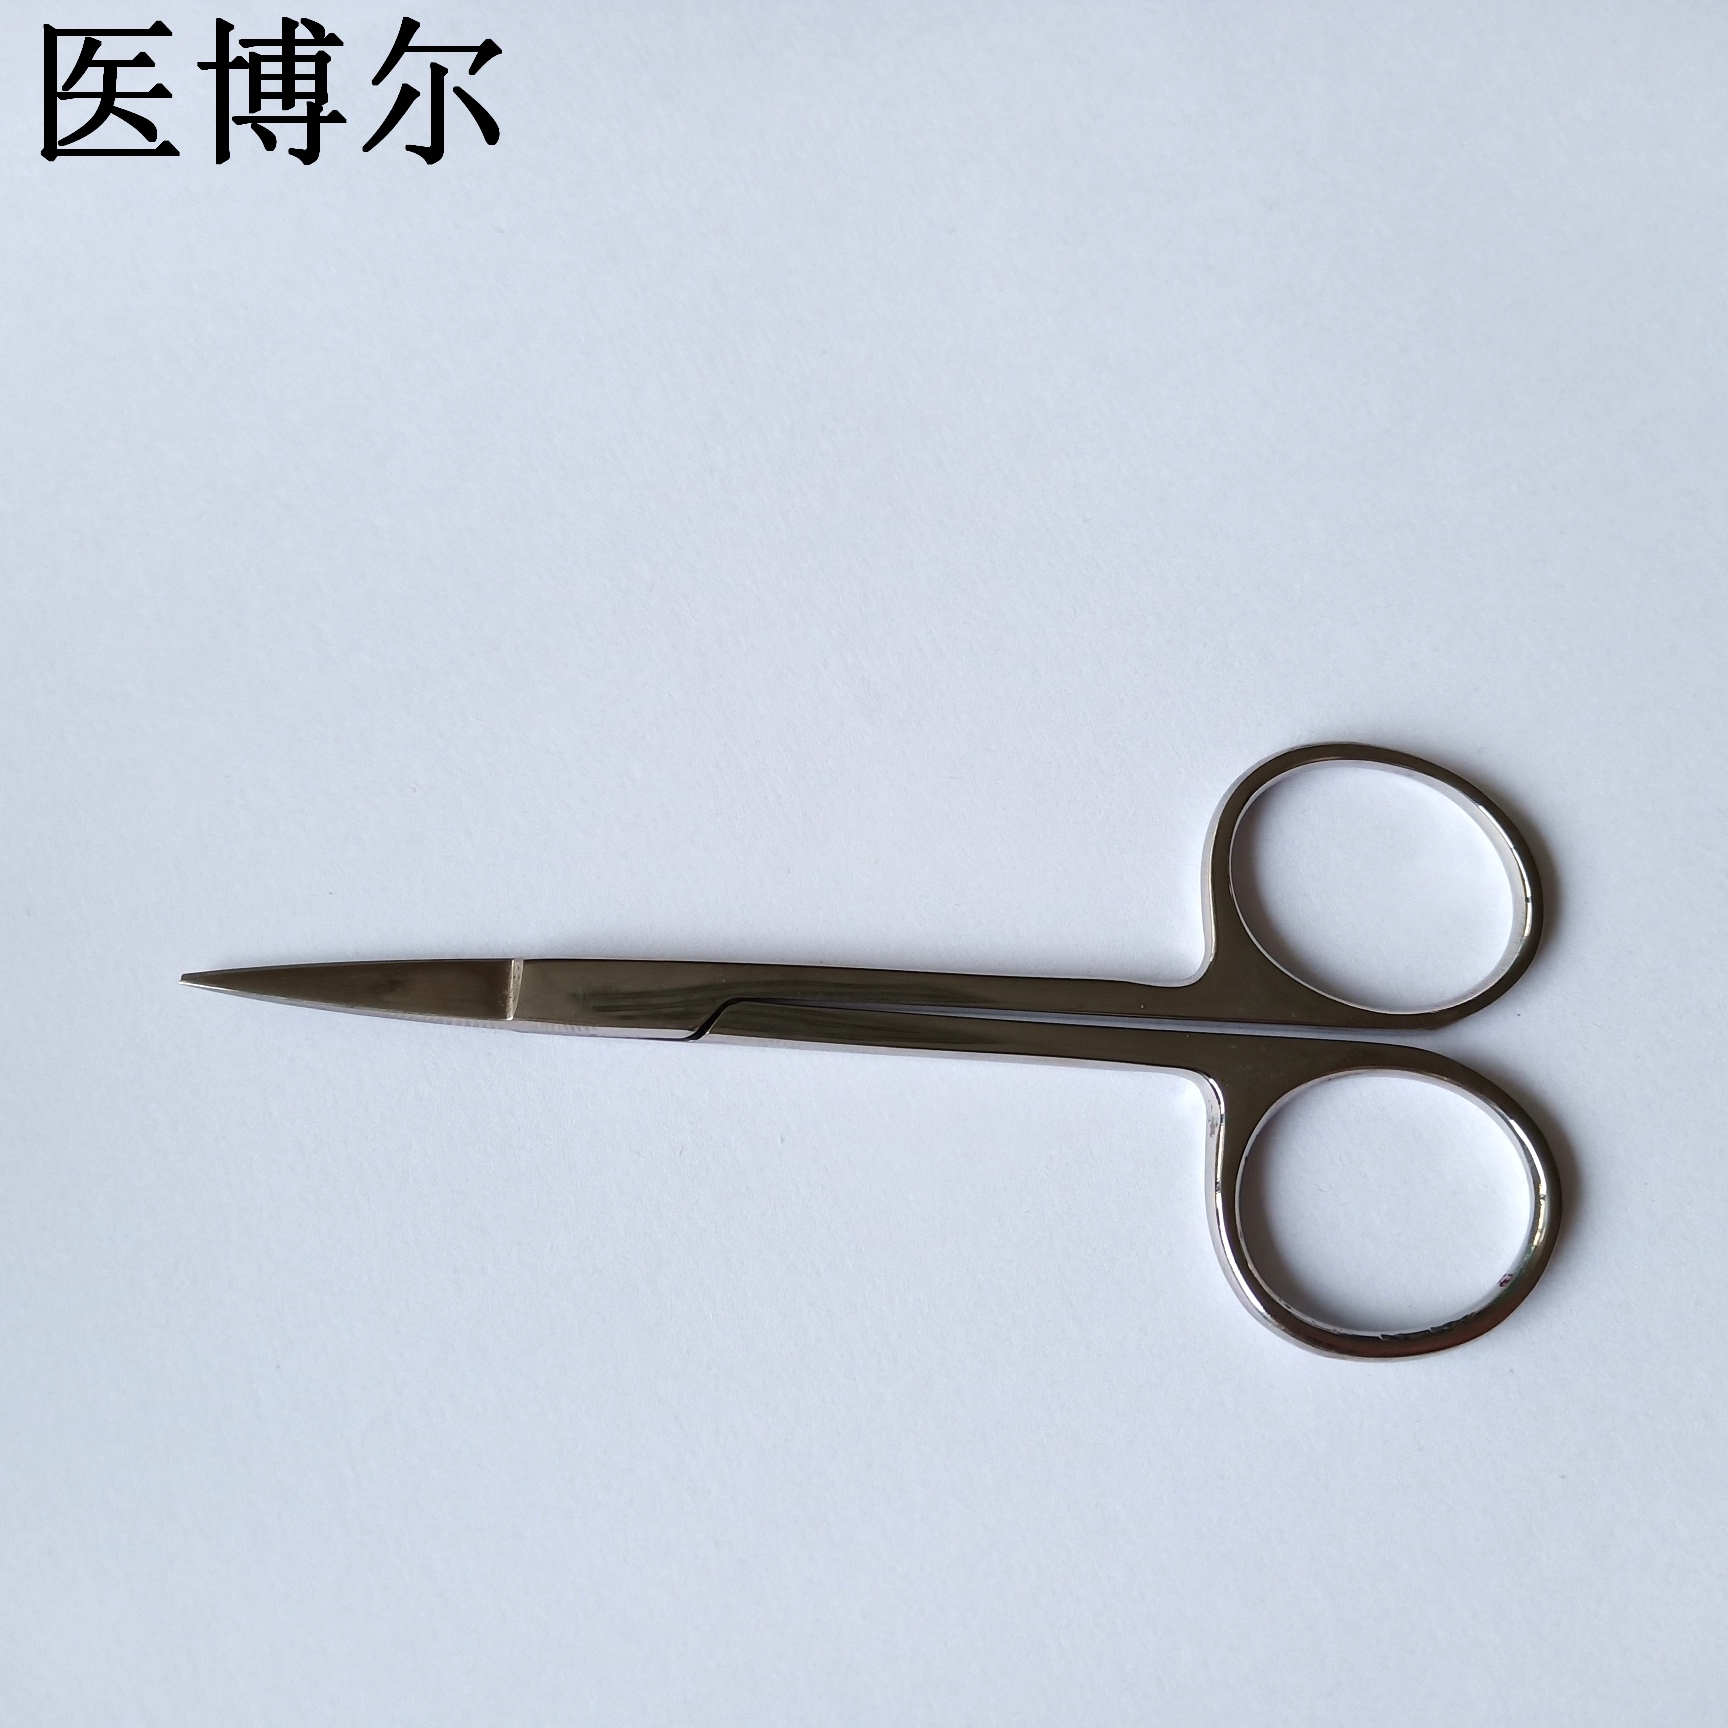 11.5cm板材剪刀 (4)_看图王.jpg